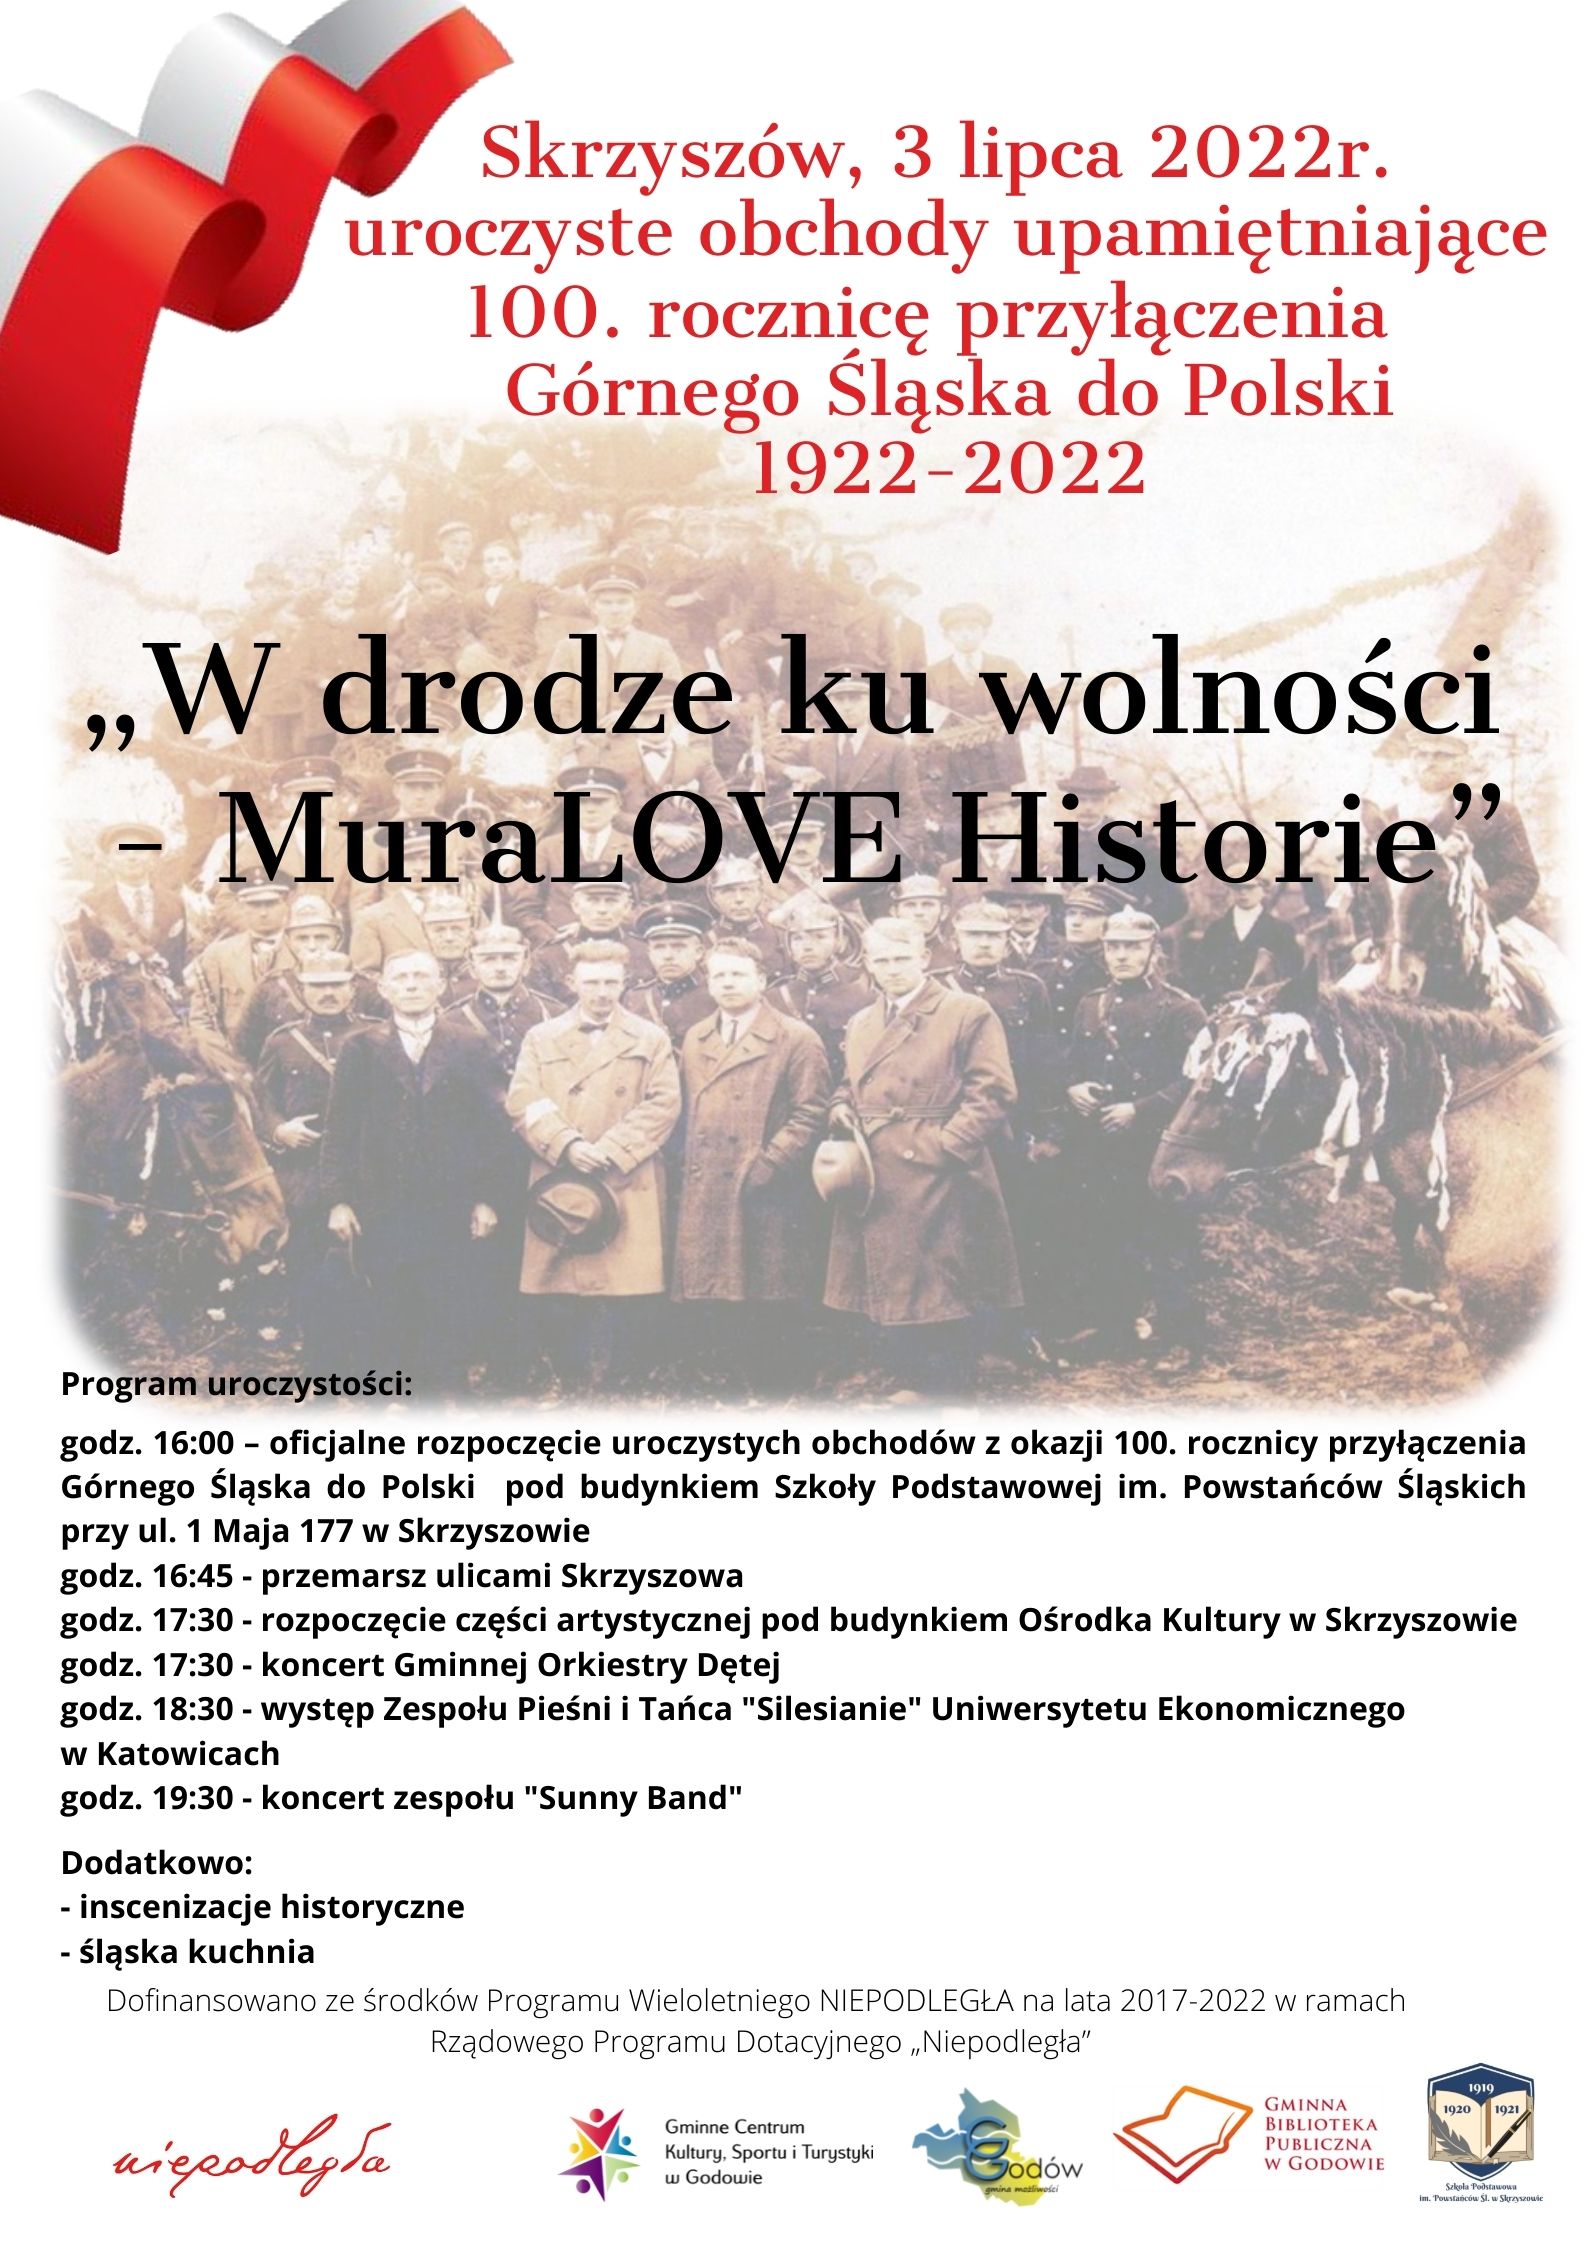 W drodze ku wolności plakat informujący o obchodach 100 rocznicy przyłączenia części Górnego Śląska do Polski